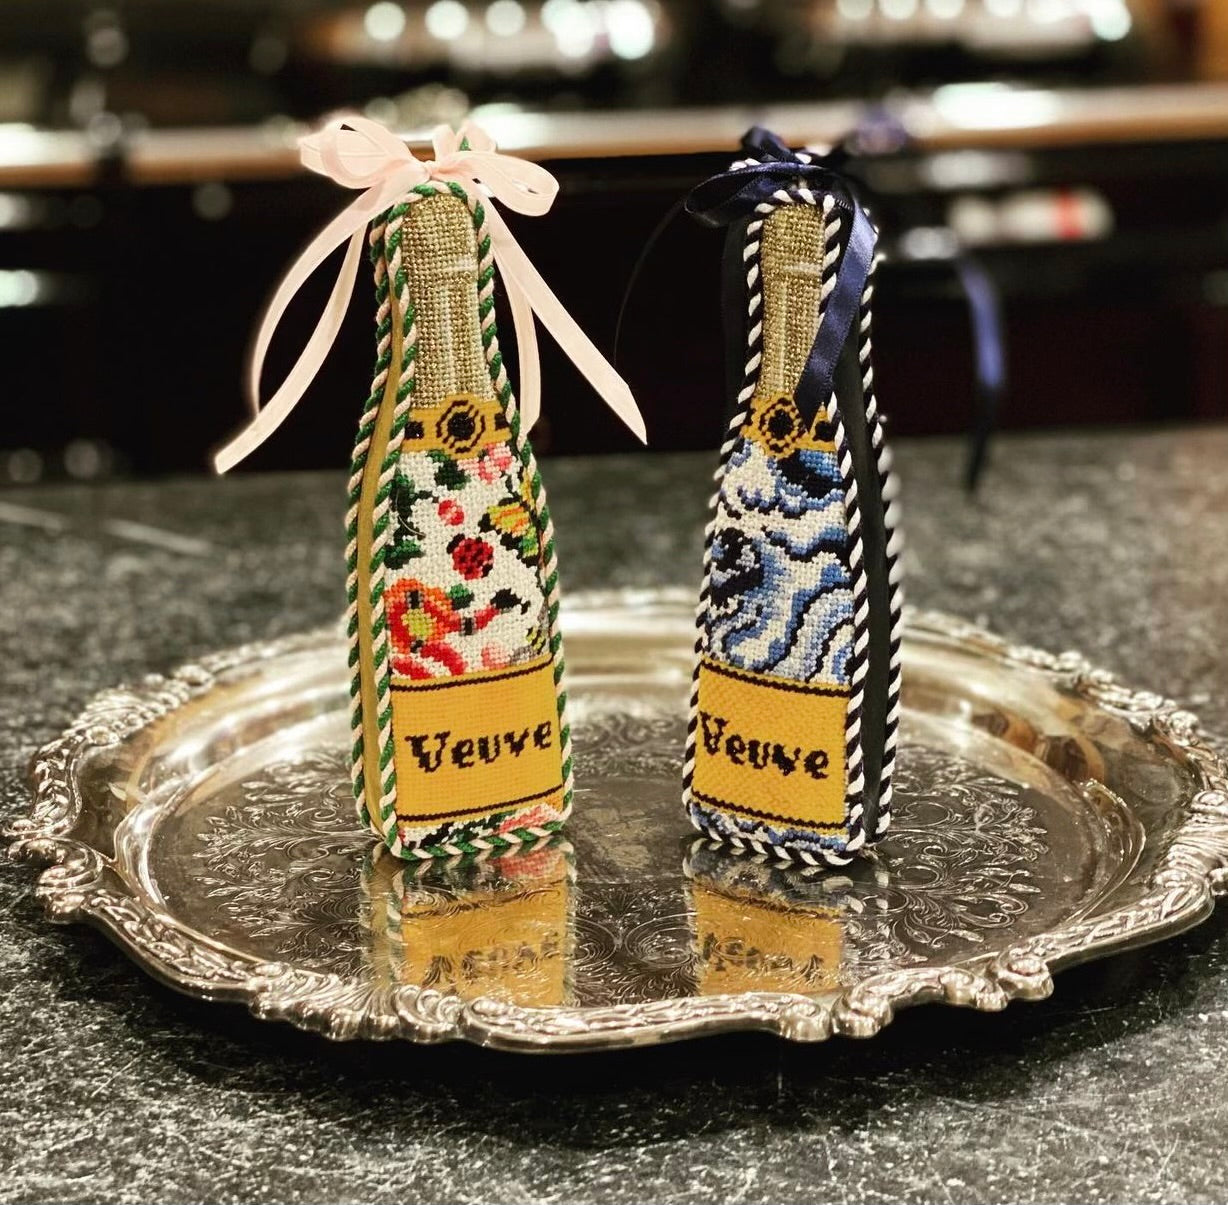 "Veuve" Champagne Bottle Butterflies Design handpainted Needlepoint Canvas by C'ate La Vie